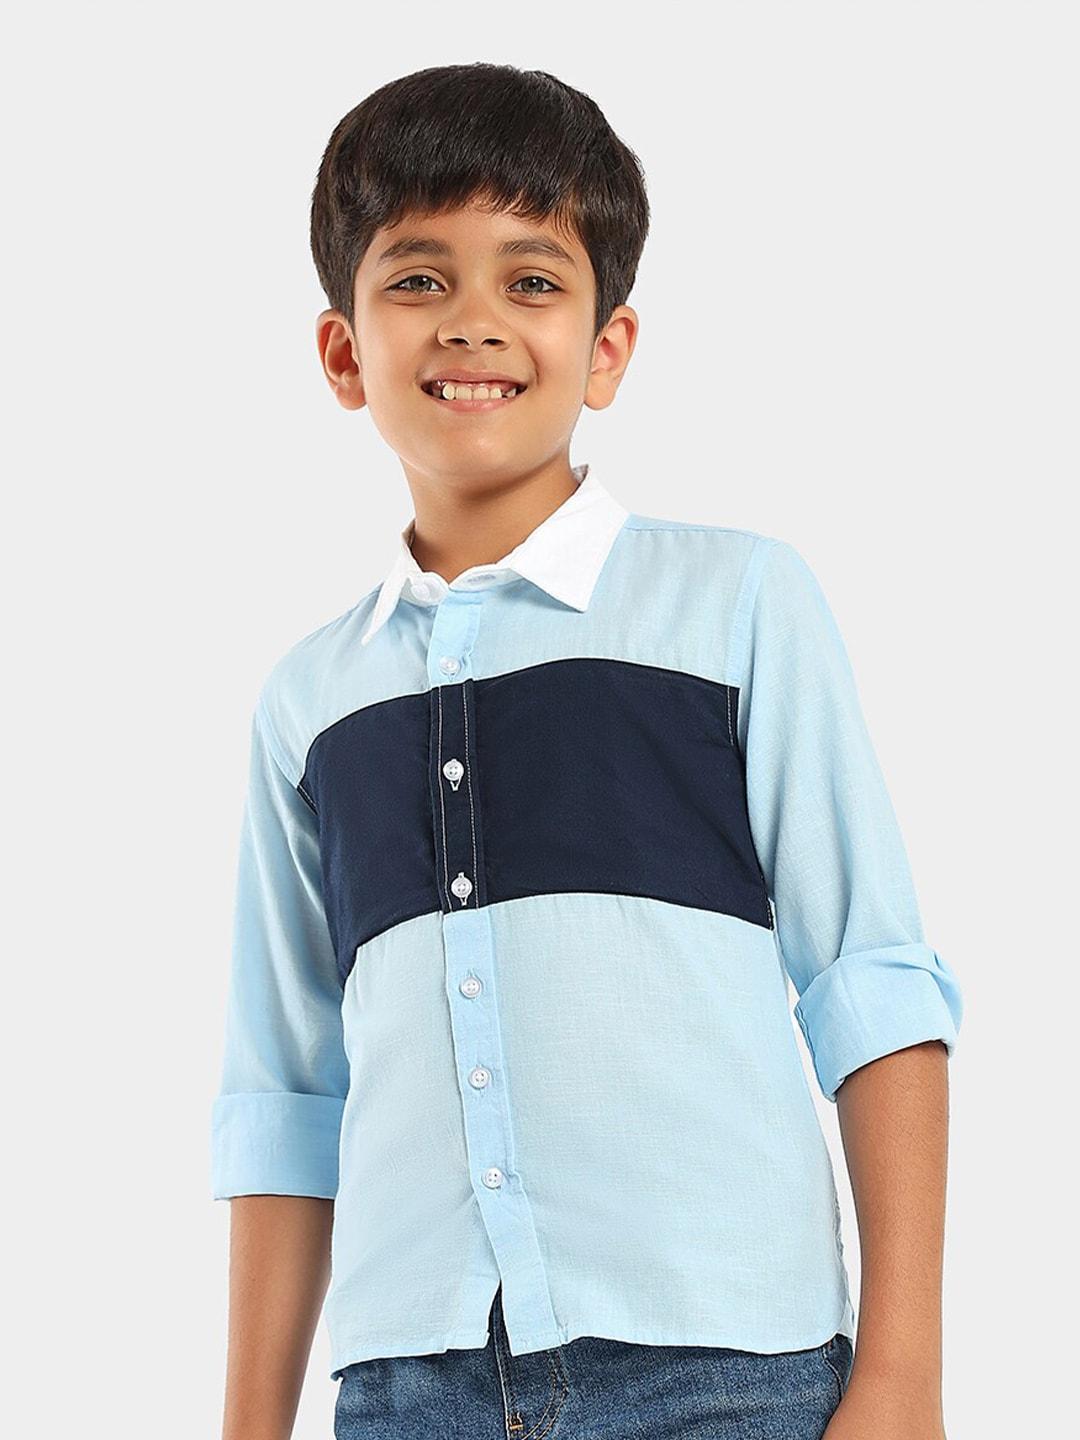 LilPicks Boys Navy Blue Smart Opaque Casual Shirt